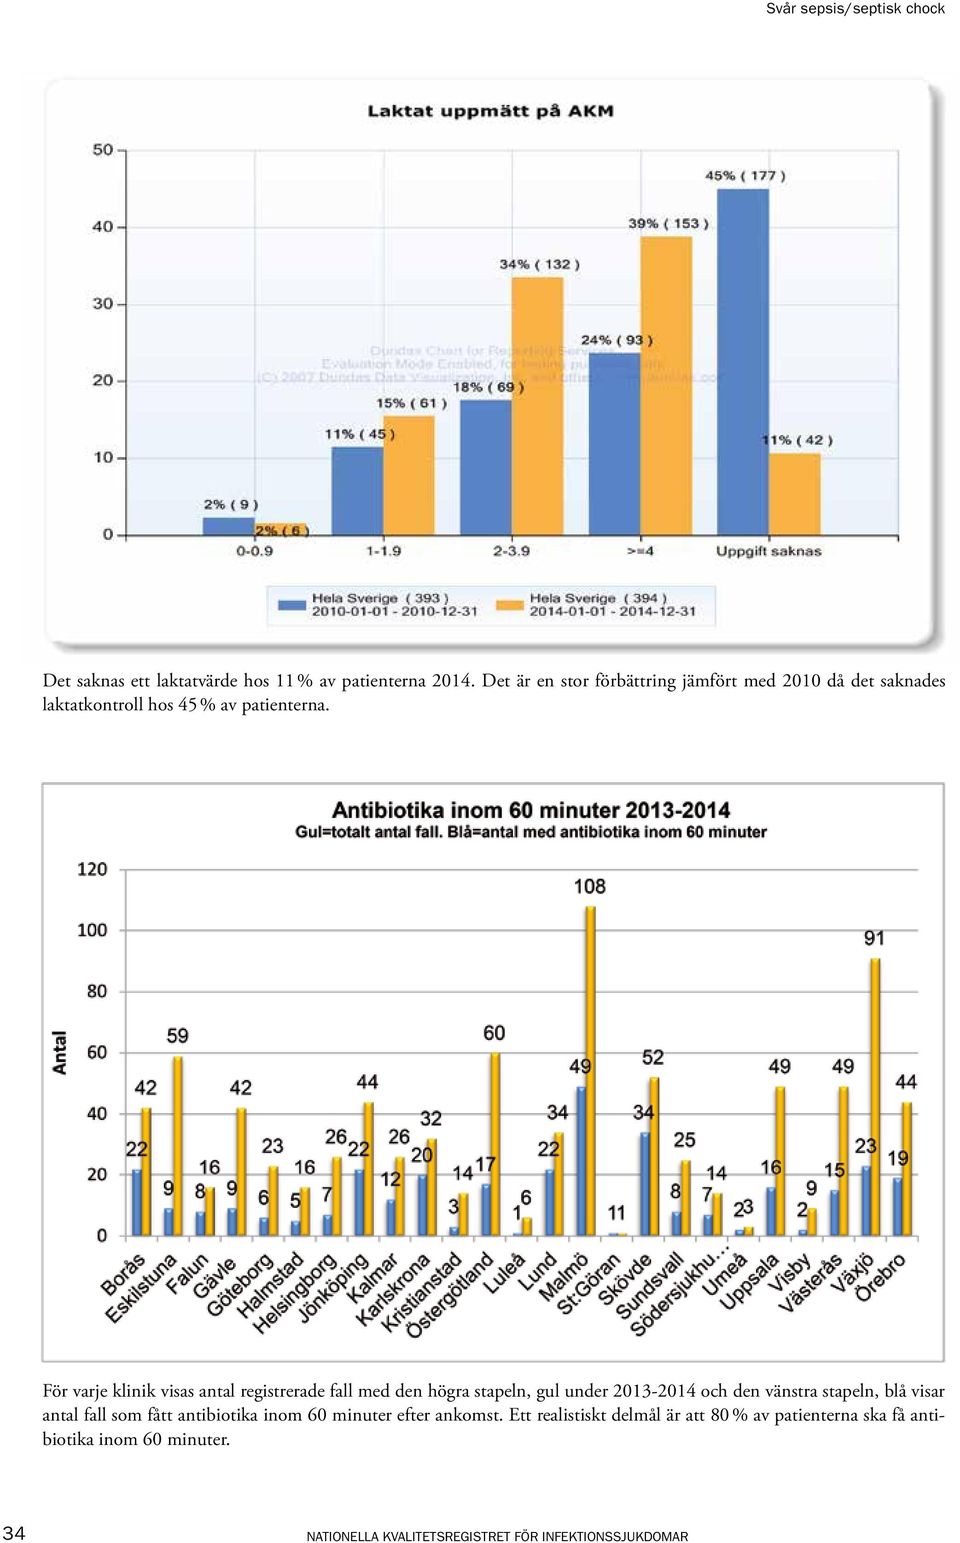 För varje klinik visas antal registrerade fall med den högra stapeln, gul under 2013-2014 och den vänstra stapeln, blå